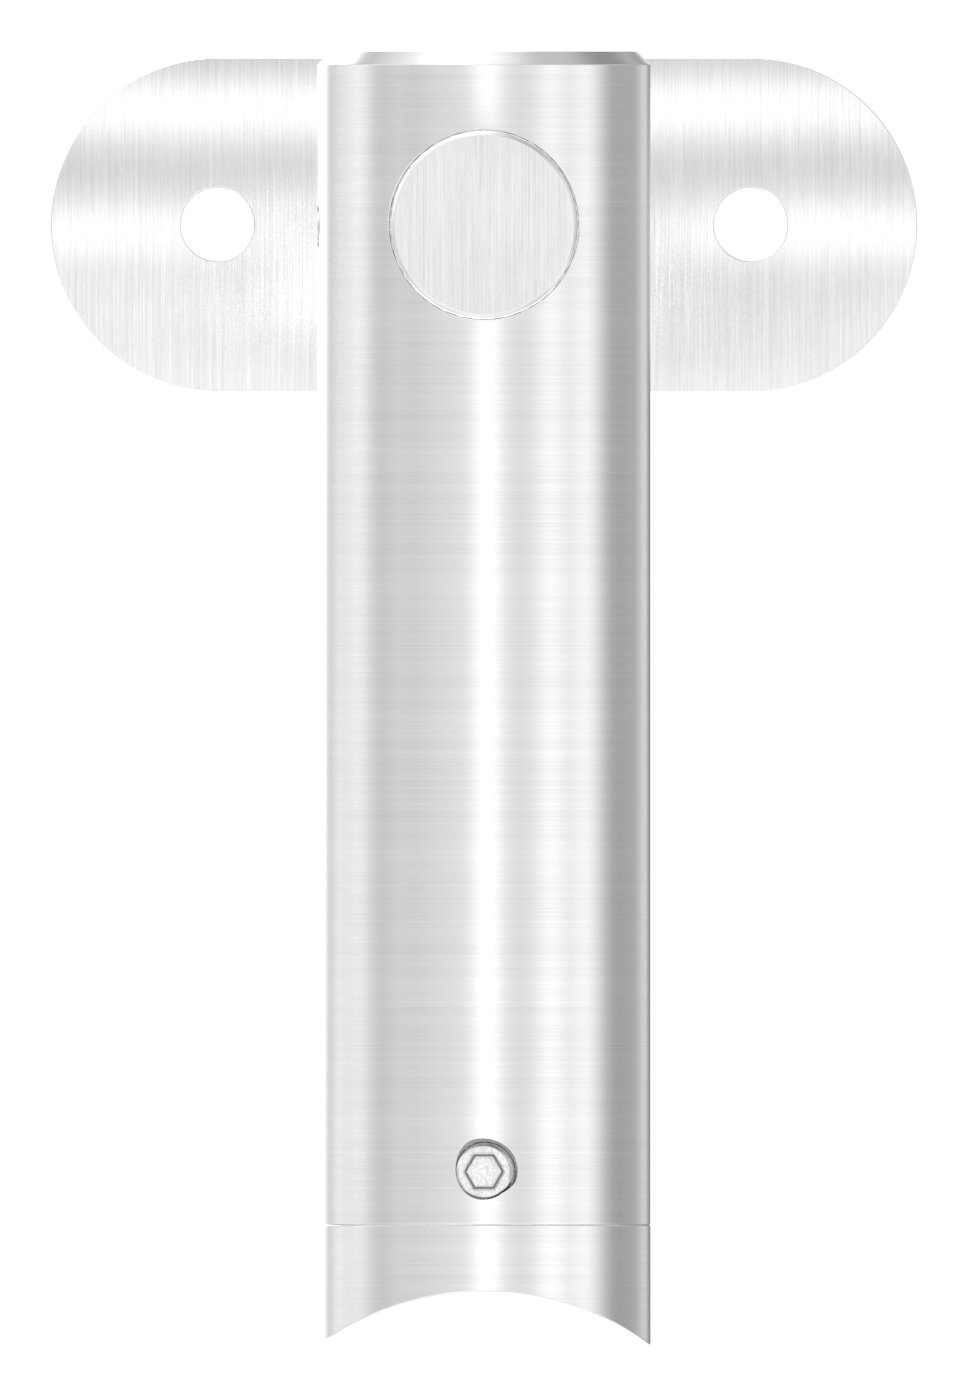 Handlaufhalter mit Handlaufanschlussplatte42,4mm, V2A